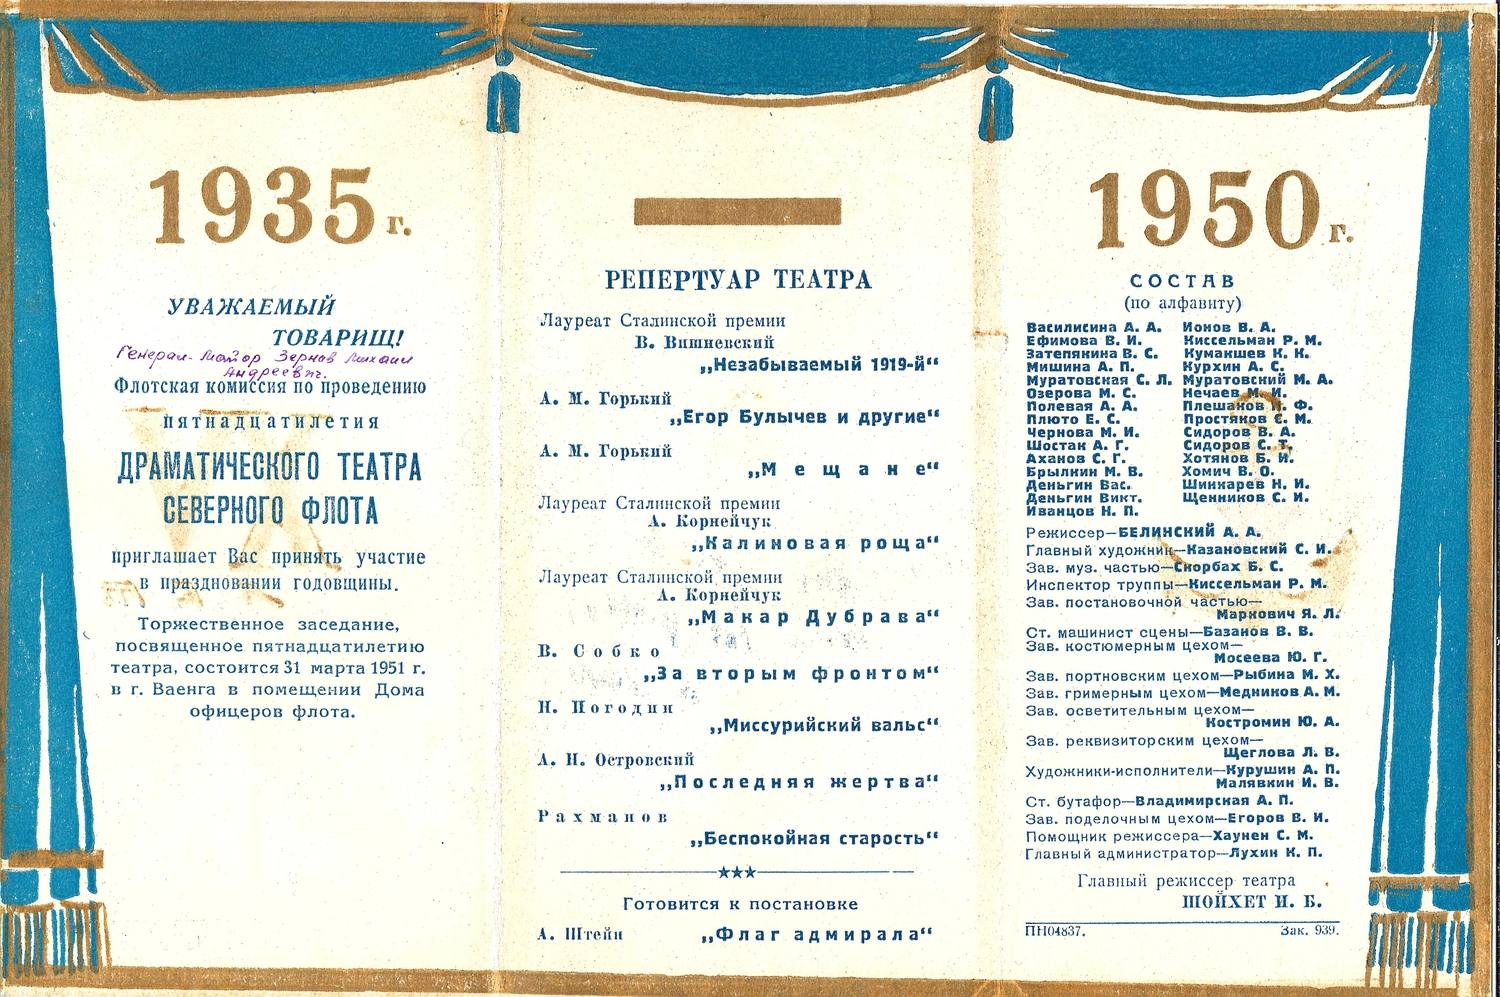 Приглашение на празднование пятнадцатилетия Драматического театра Северного флота 31 марта 1951 года в г. Ваенга на имя М.А. Зернова.